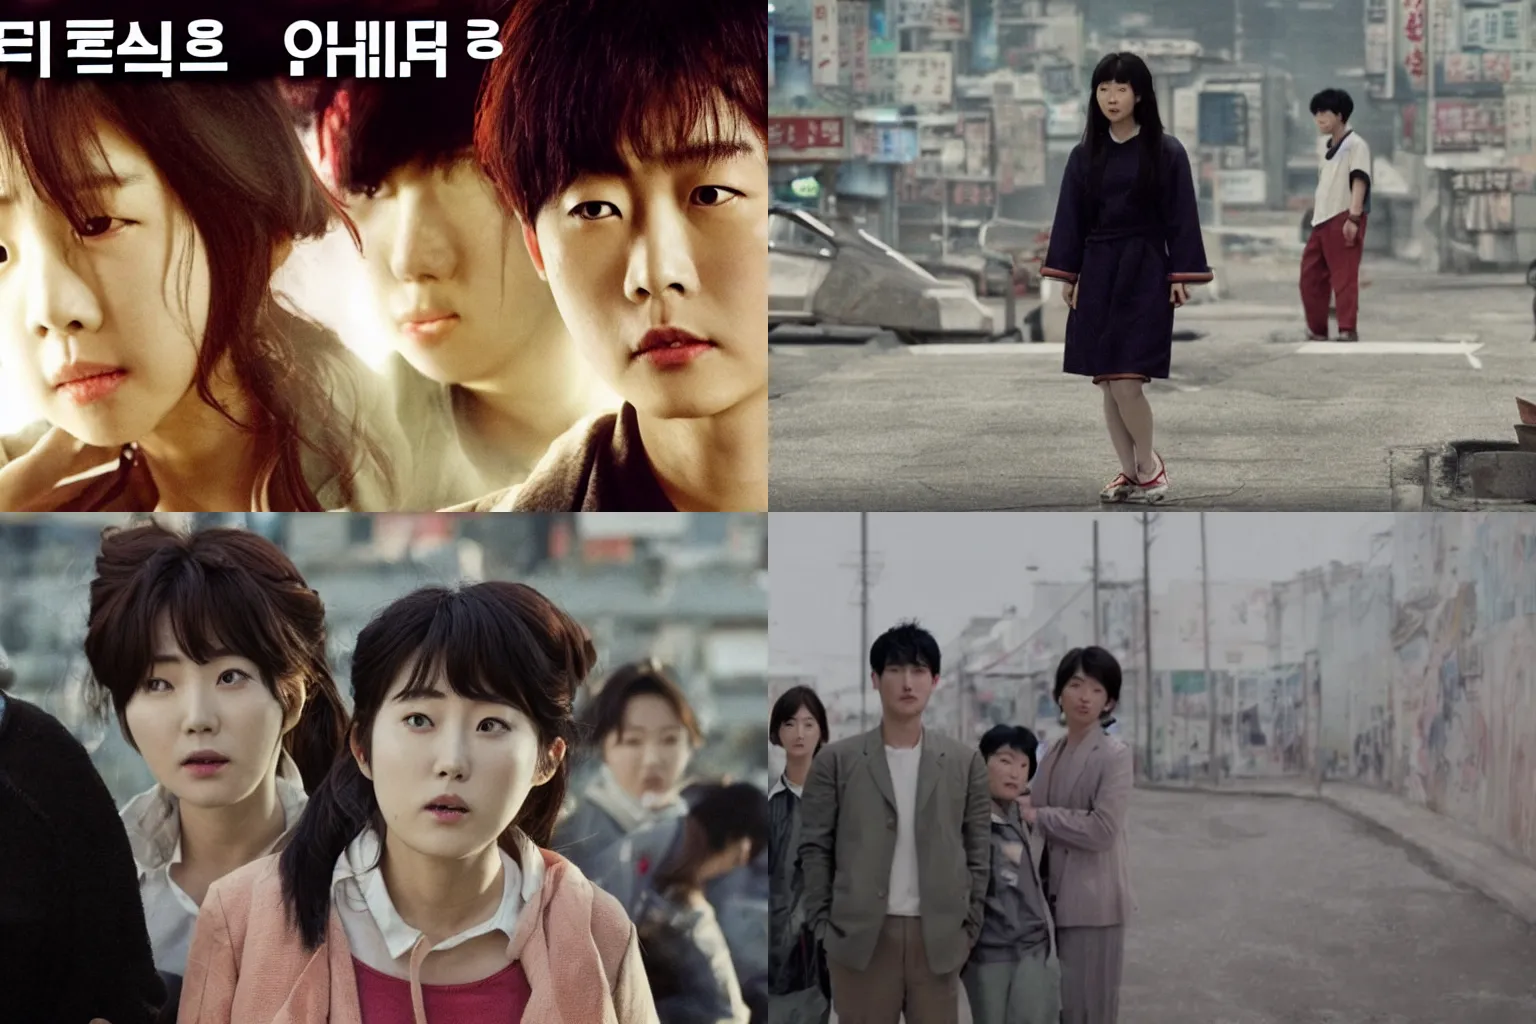 Prompt: korean film still from korean adaptation of AKIRA